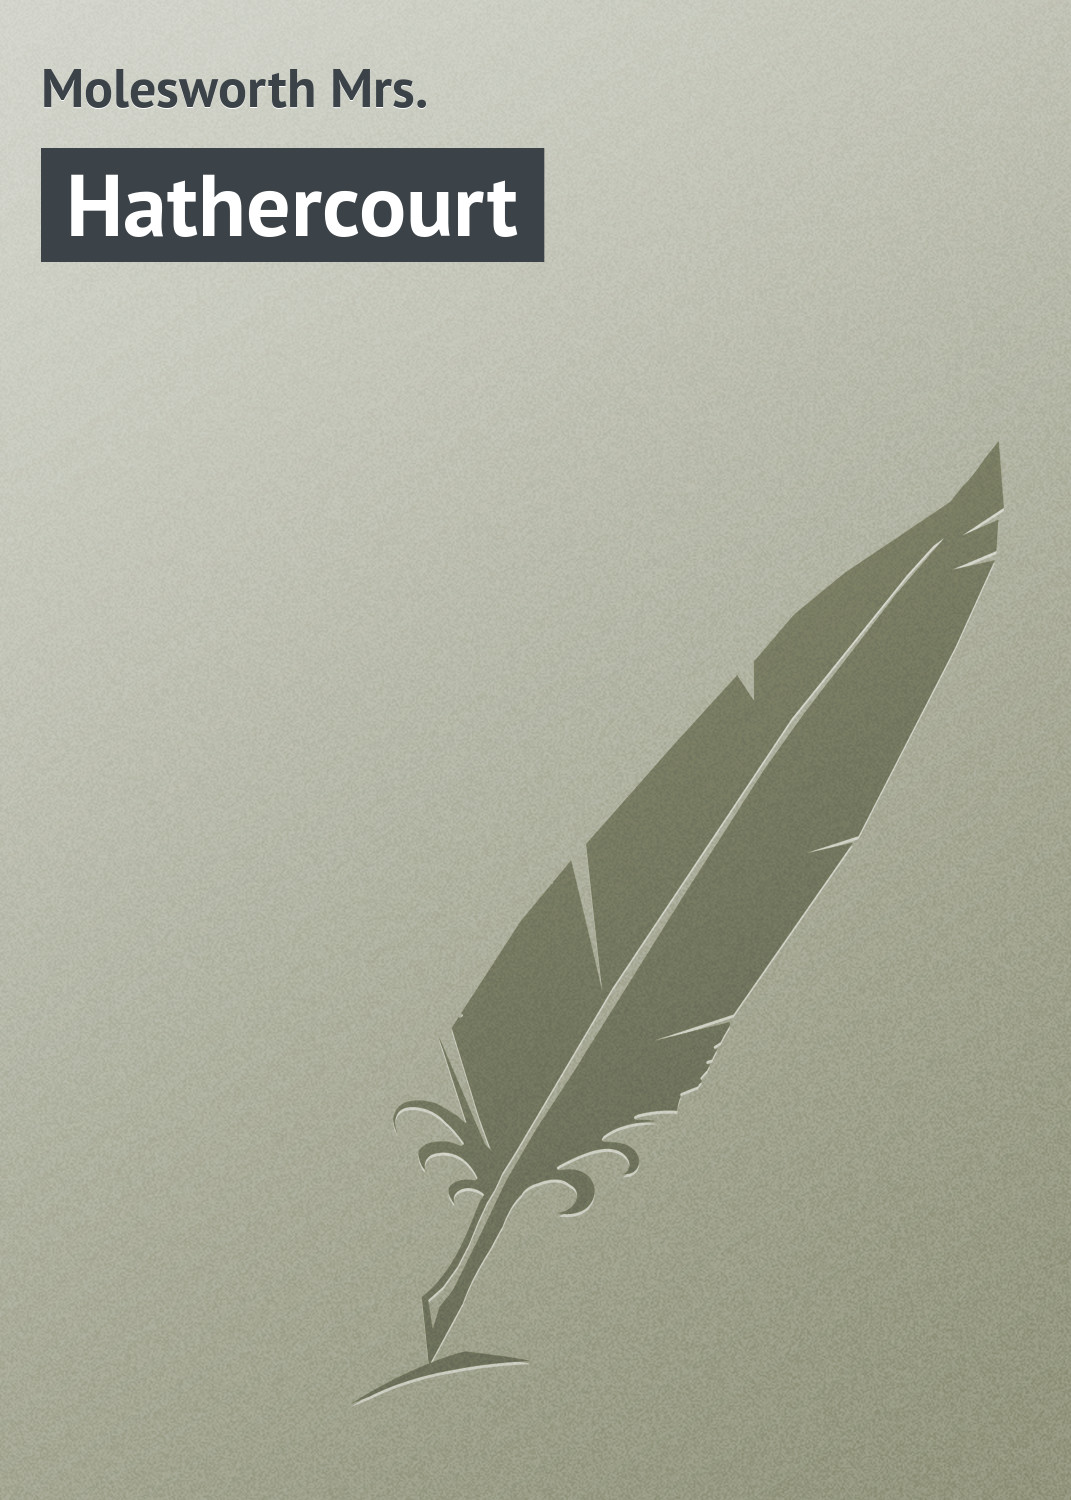 Книга Hathercourt из серии , созданная Mrs. Molesworth, может относится к жанру Зарубежная классика. Стоимость электронной книги Hathercourt с идентификатором 23161955 составляет 5.99 руб.